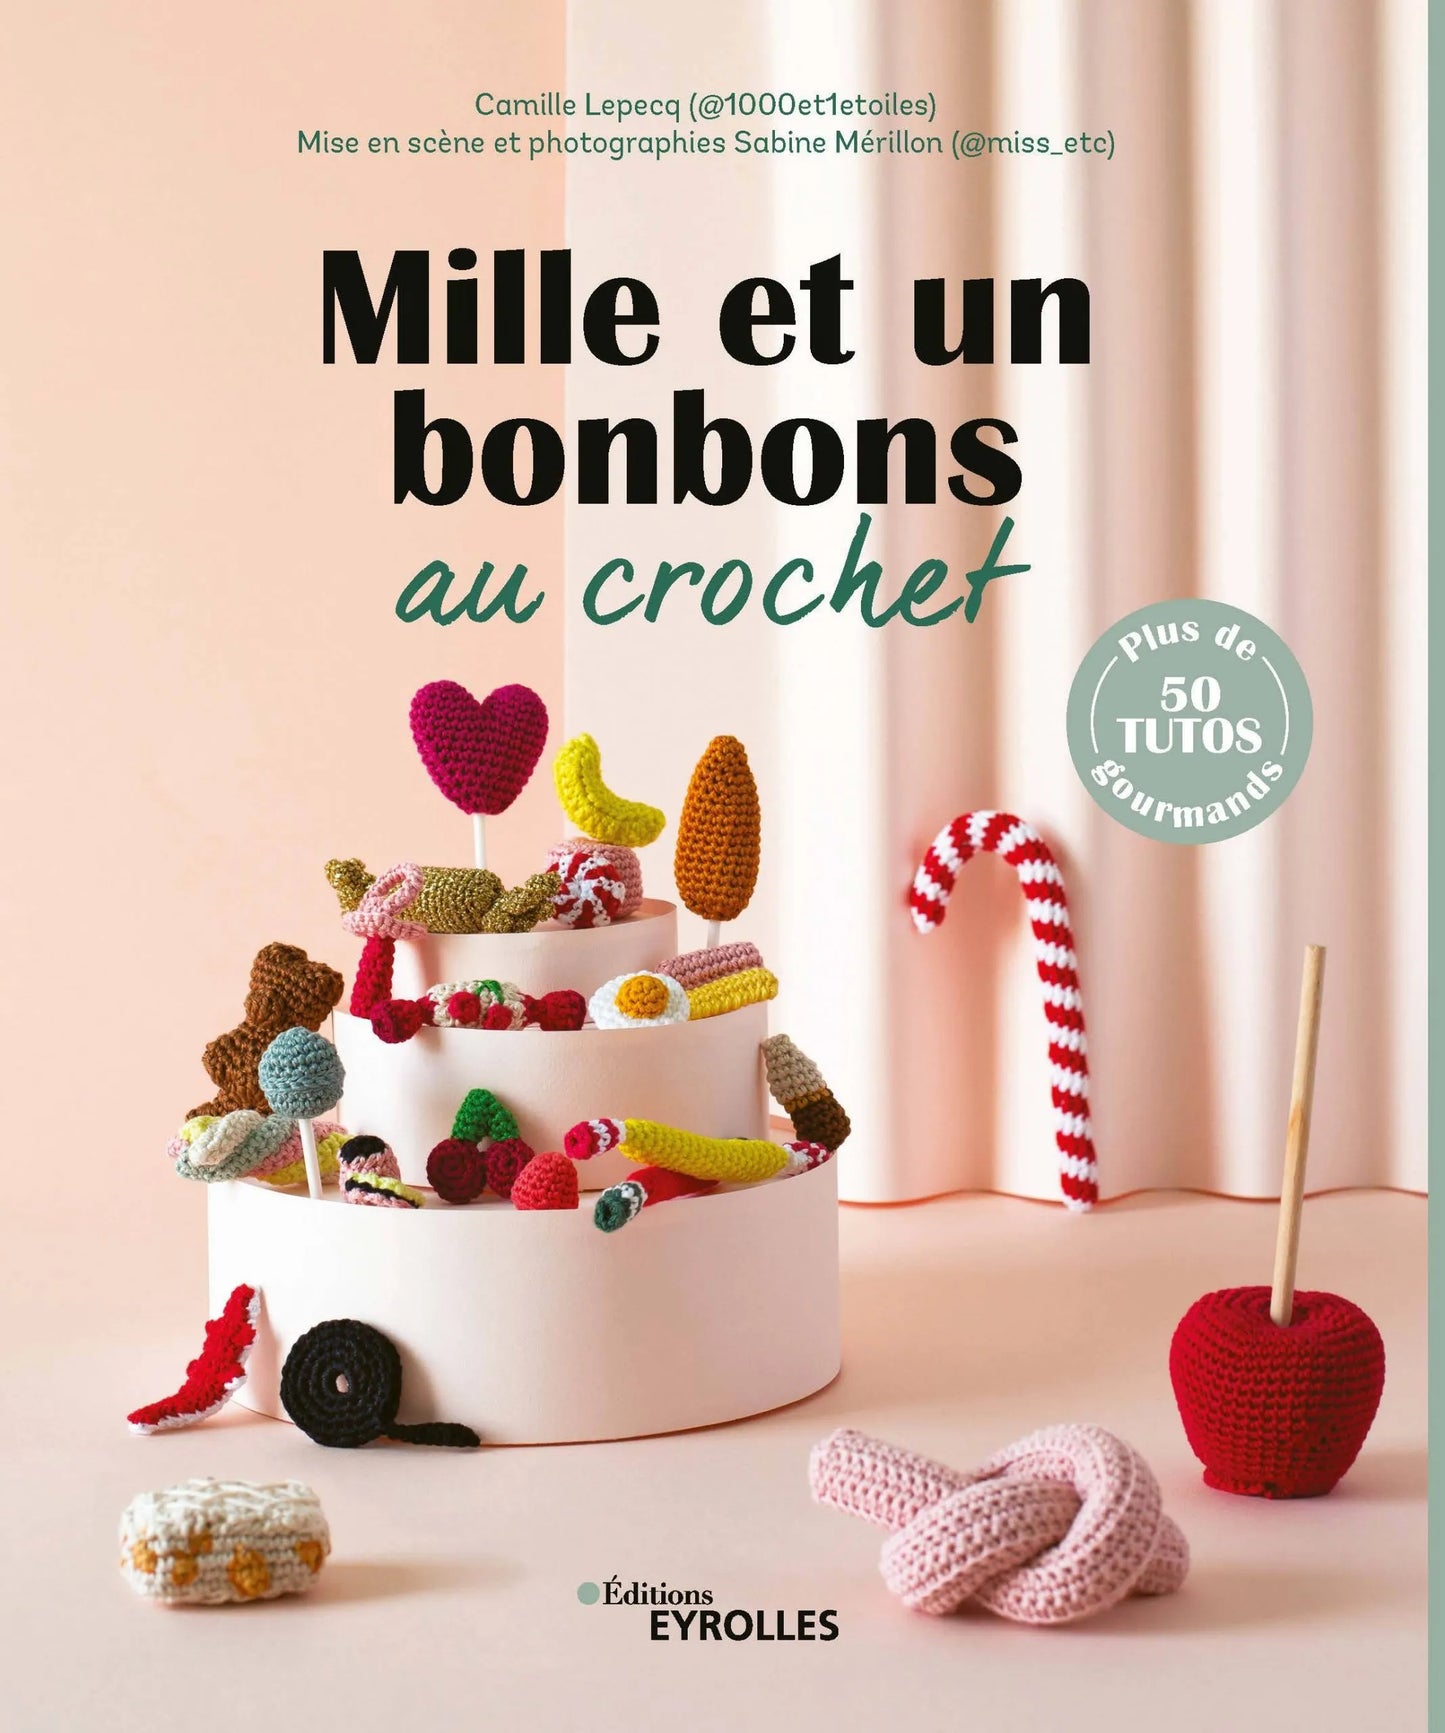 Mille et un bonbons au crochet - Camille Lepecq (@1000et1etoiles)